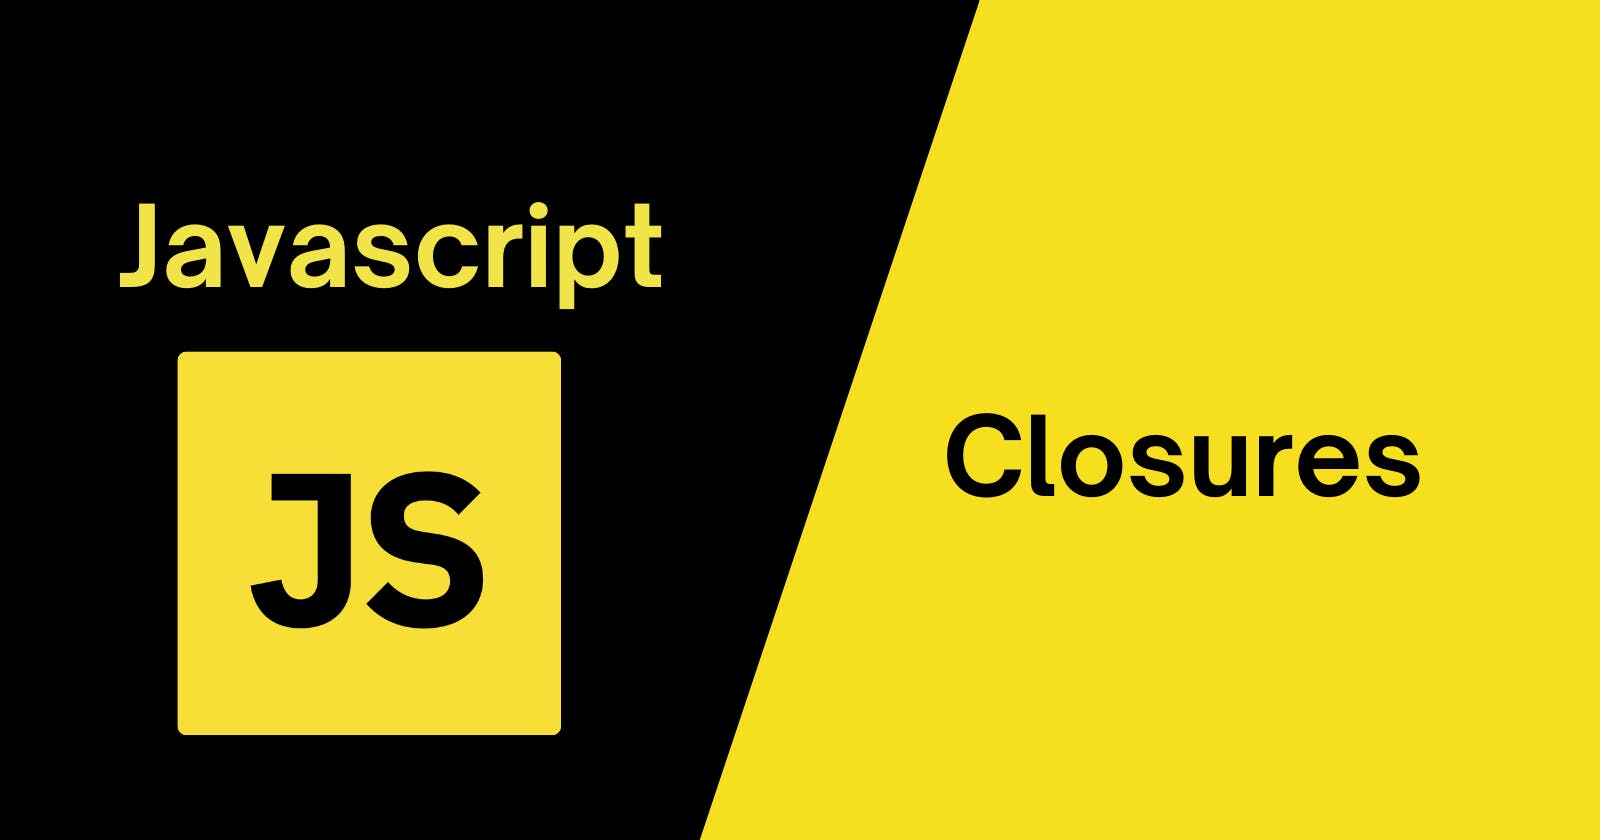 Closures in JavaScript